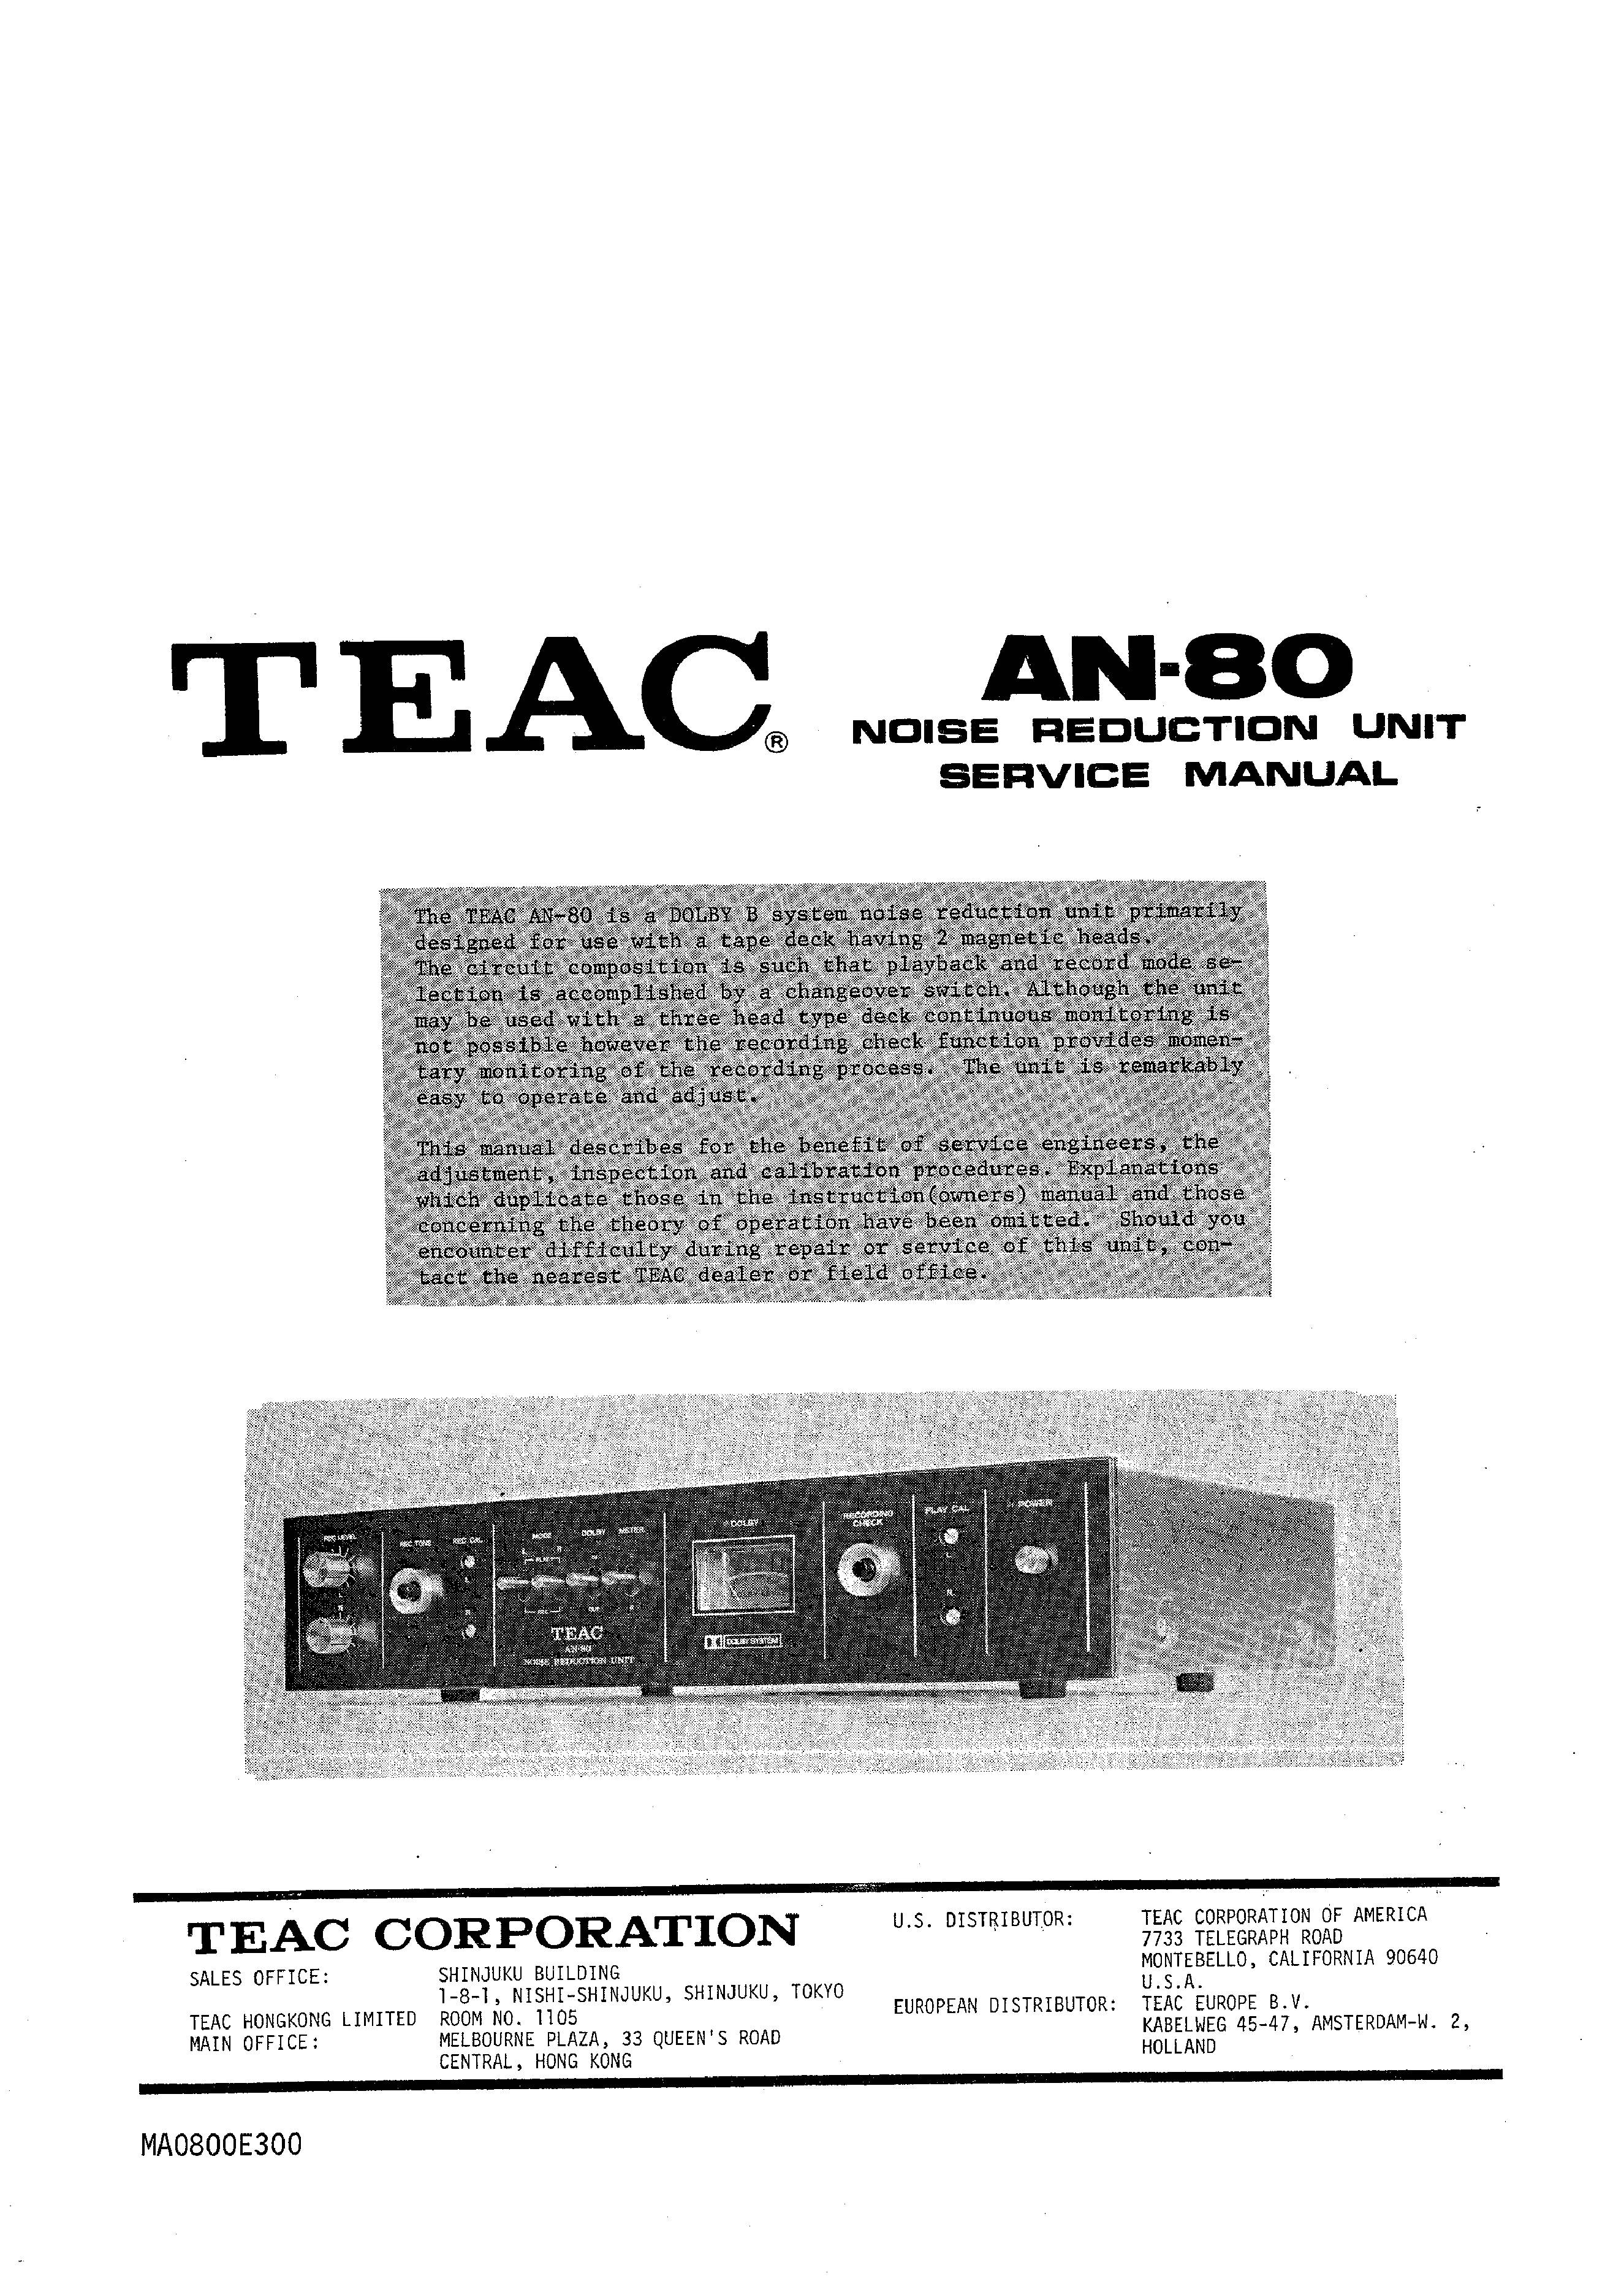 TEAC AN-80